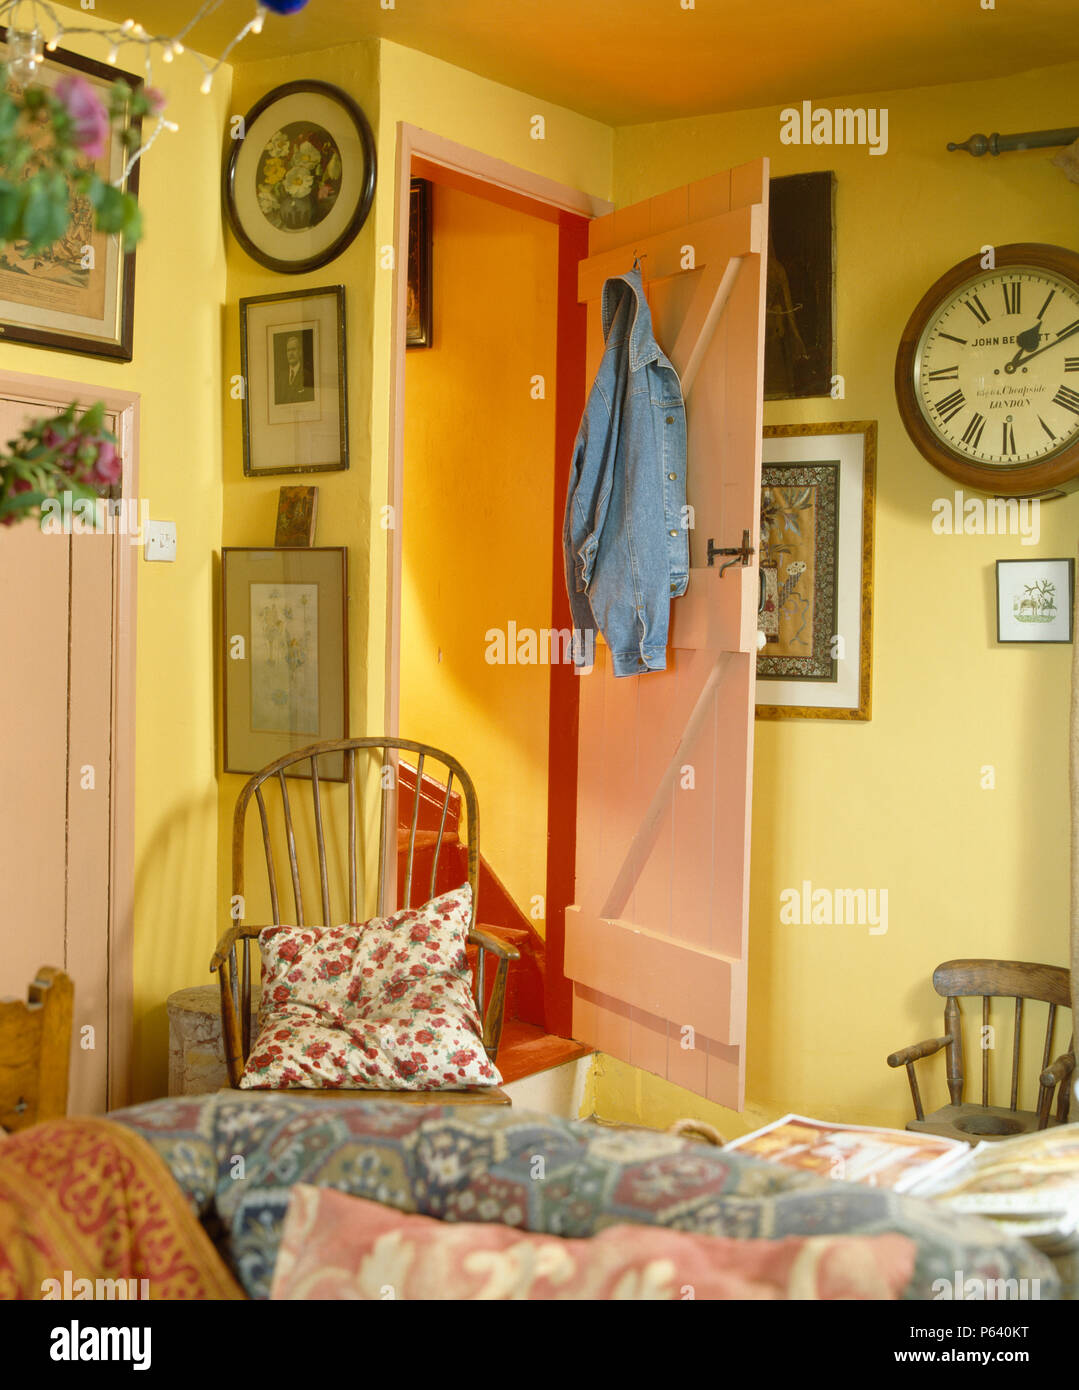 Orologio vintage e immagini su pareti di giallo economia cottage in stile salotto con pini porta Foto Stock